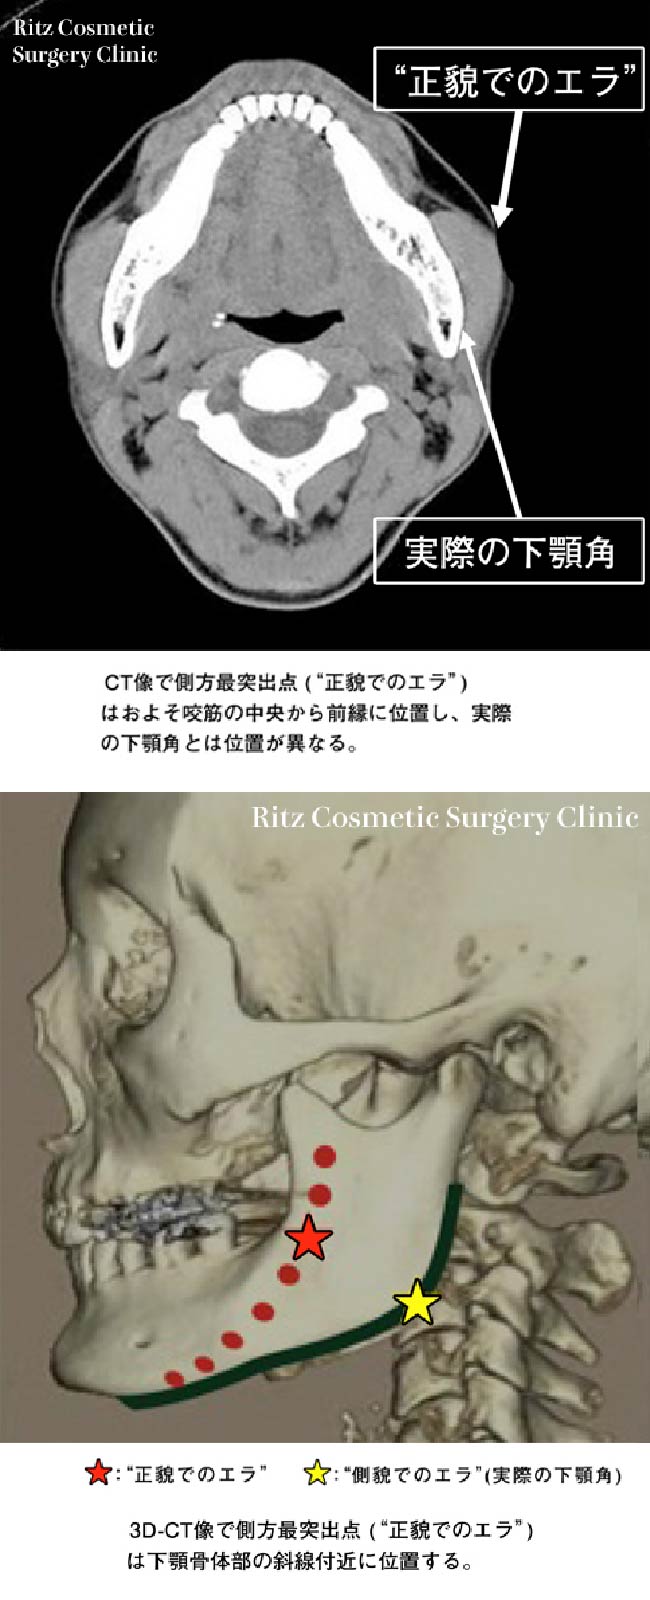 エラ(下顎角)の位置に対する誤解　(d)CT画像で側方再突出点（正貌でのエラ）はおよそ咬筋の中央から前縁に位置し、実際の下顎角とは位置が異なる。(e)3D-CT像側方再突出点（正貌でのエラ）は下顎体部の斜線付近に位置する